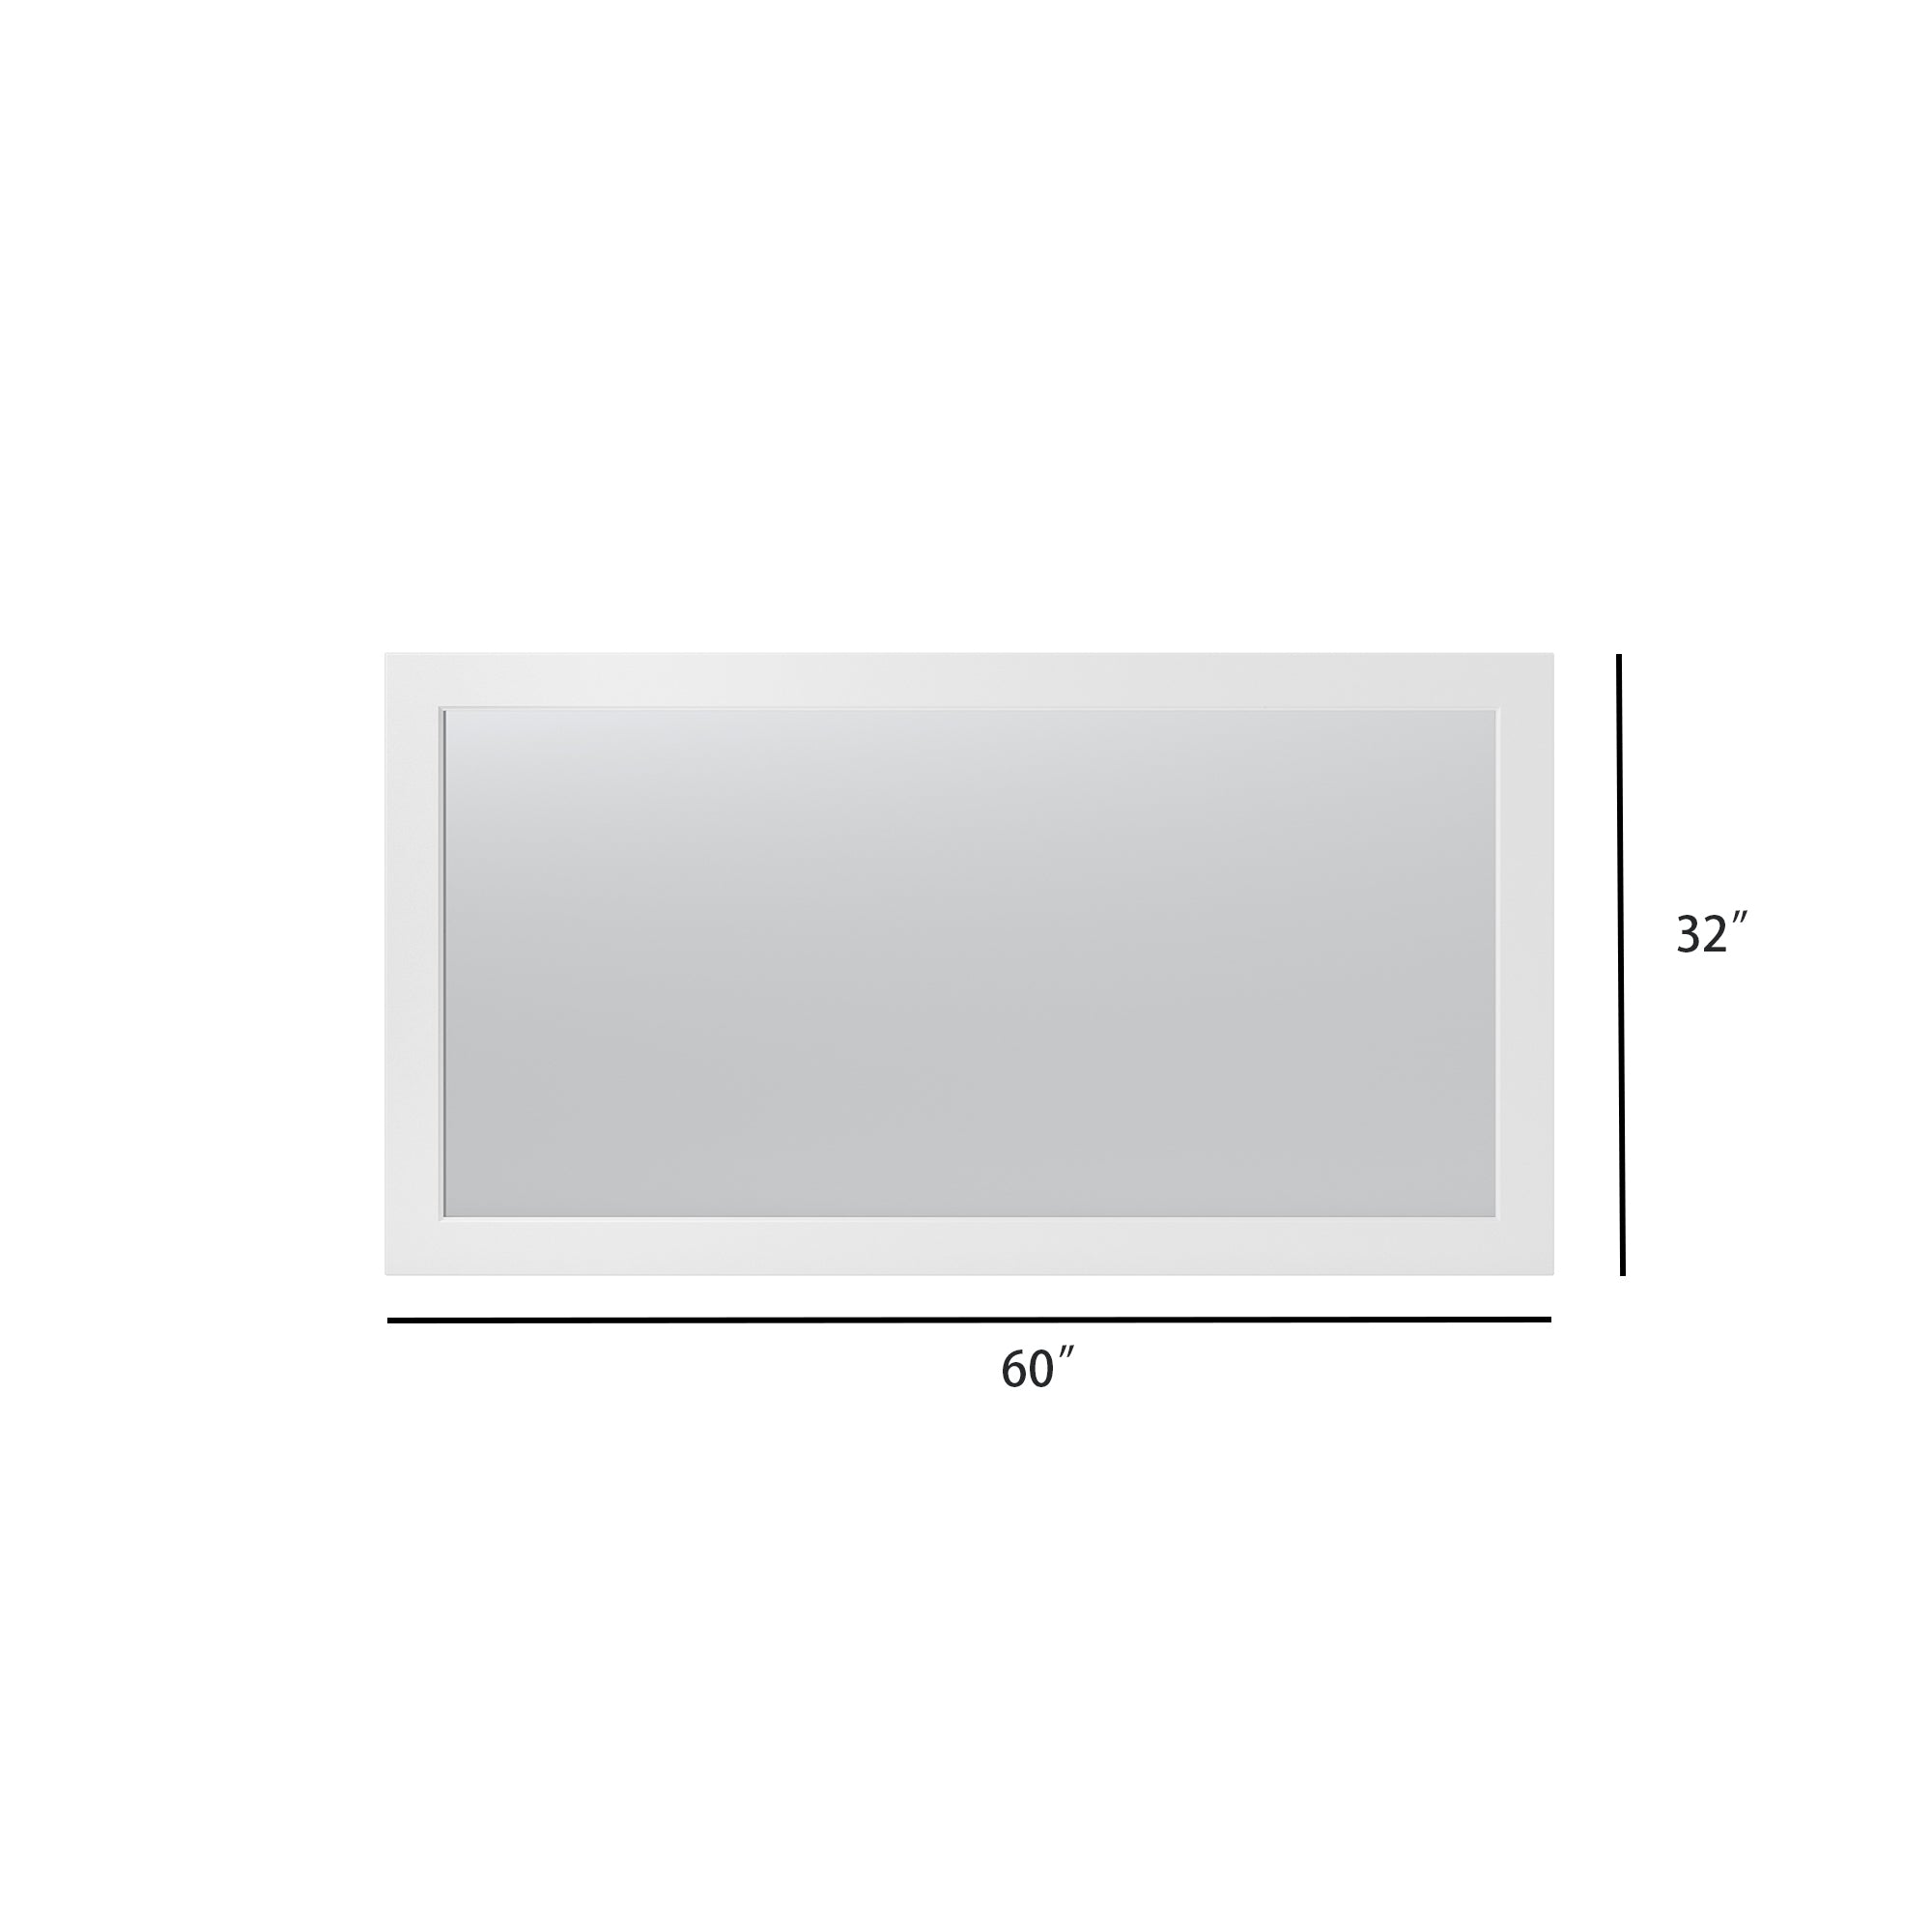 (Rectangular MDF Framed Wall Mounted Bathroom Mirror(CRM05)